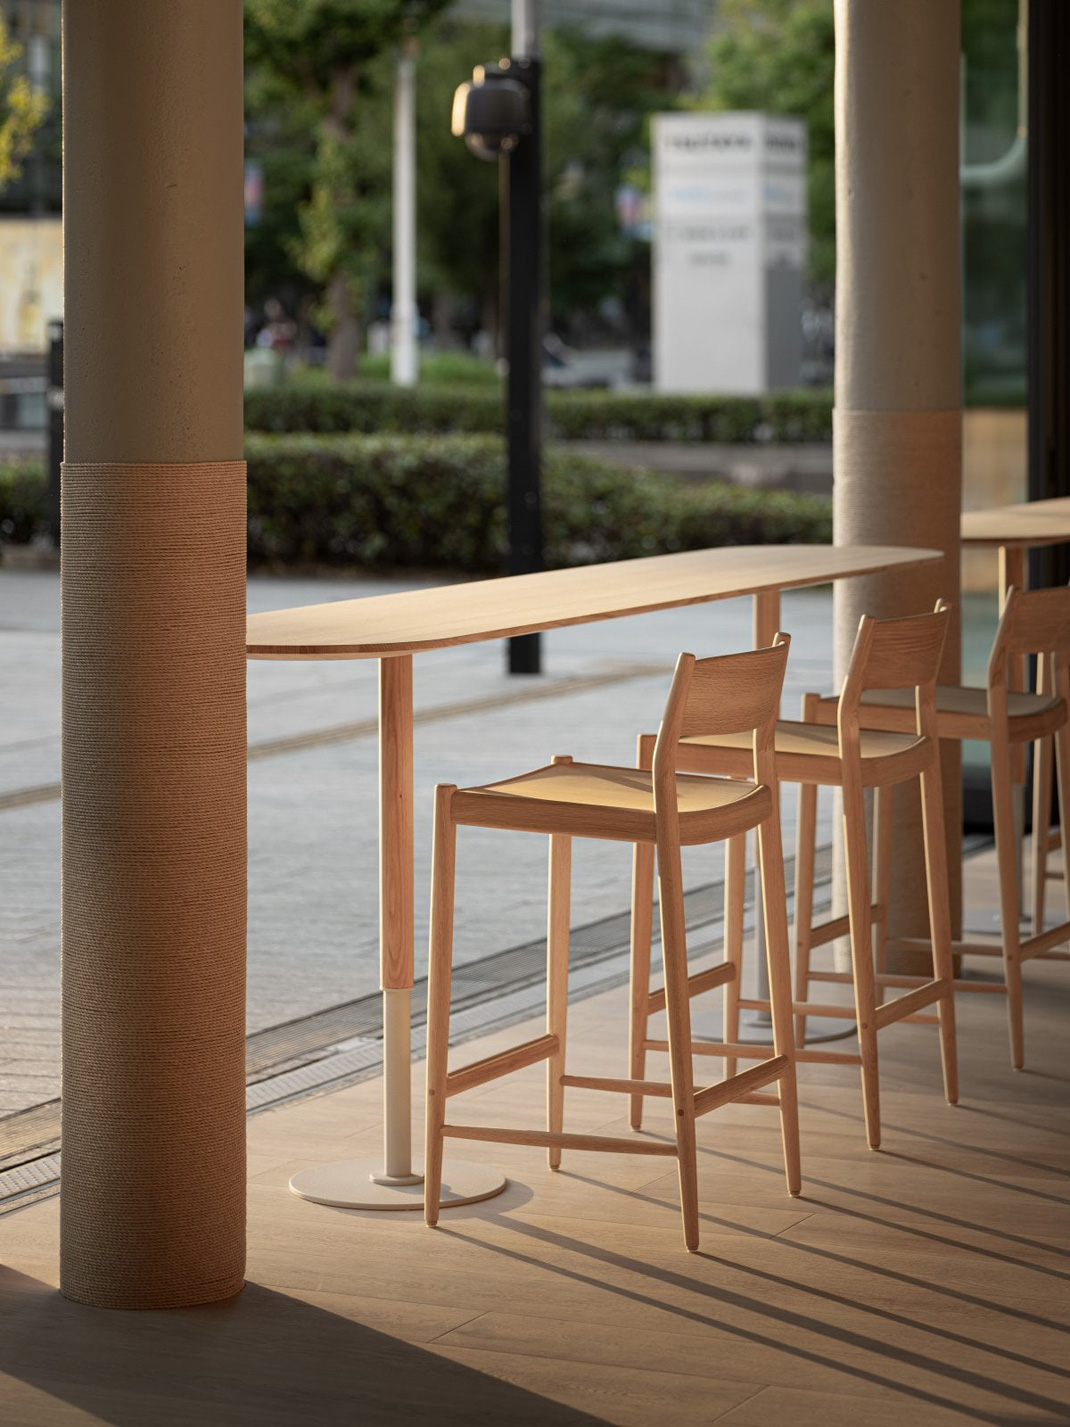 开放空间咖啡馆Blue Bottle Coffee 日本 咖啡馆 开放 曲线 木质 logo设计 vi设计 空间设计